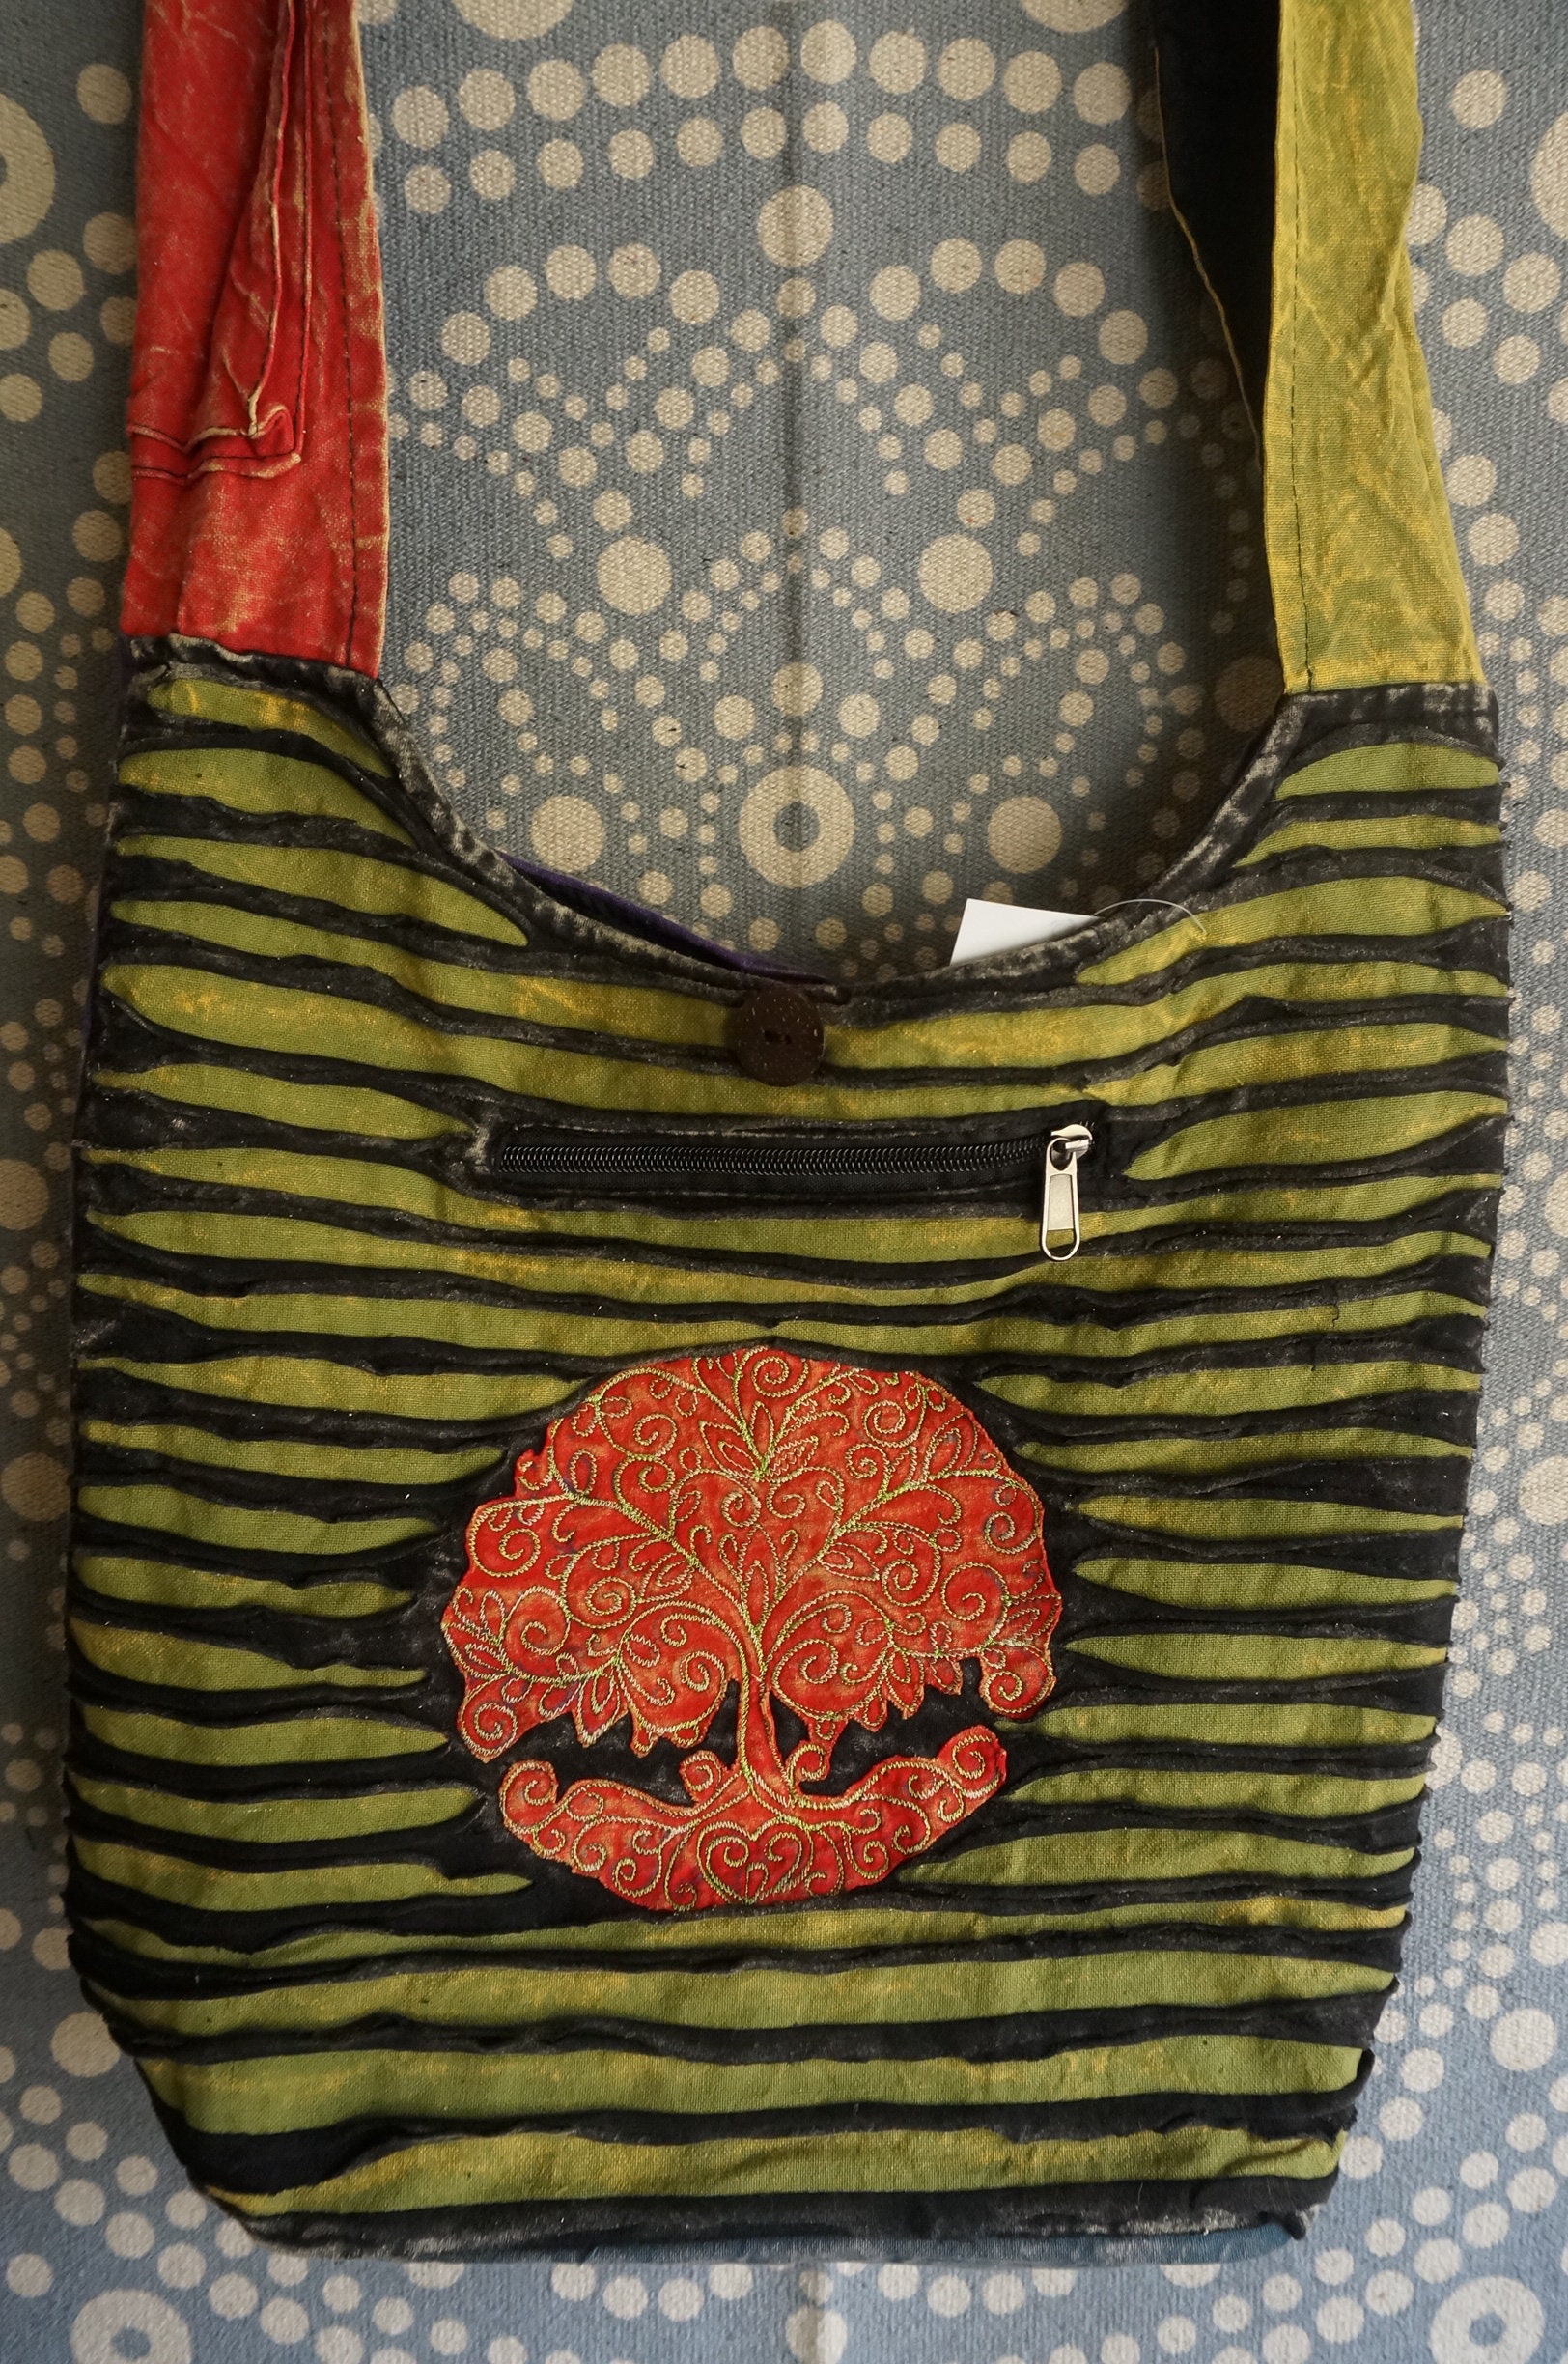 Tree of Life Art Bag Colorful Hobo Bag Purse Hippie Bag 